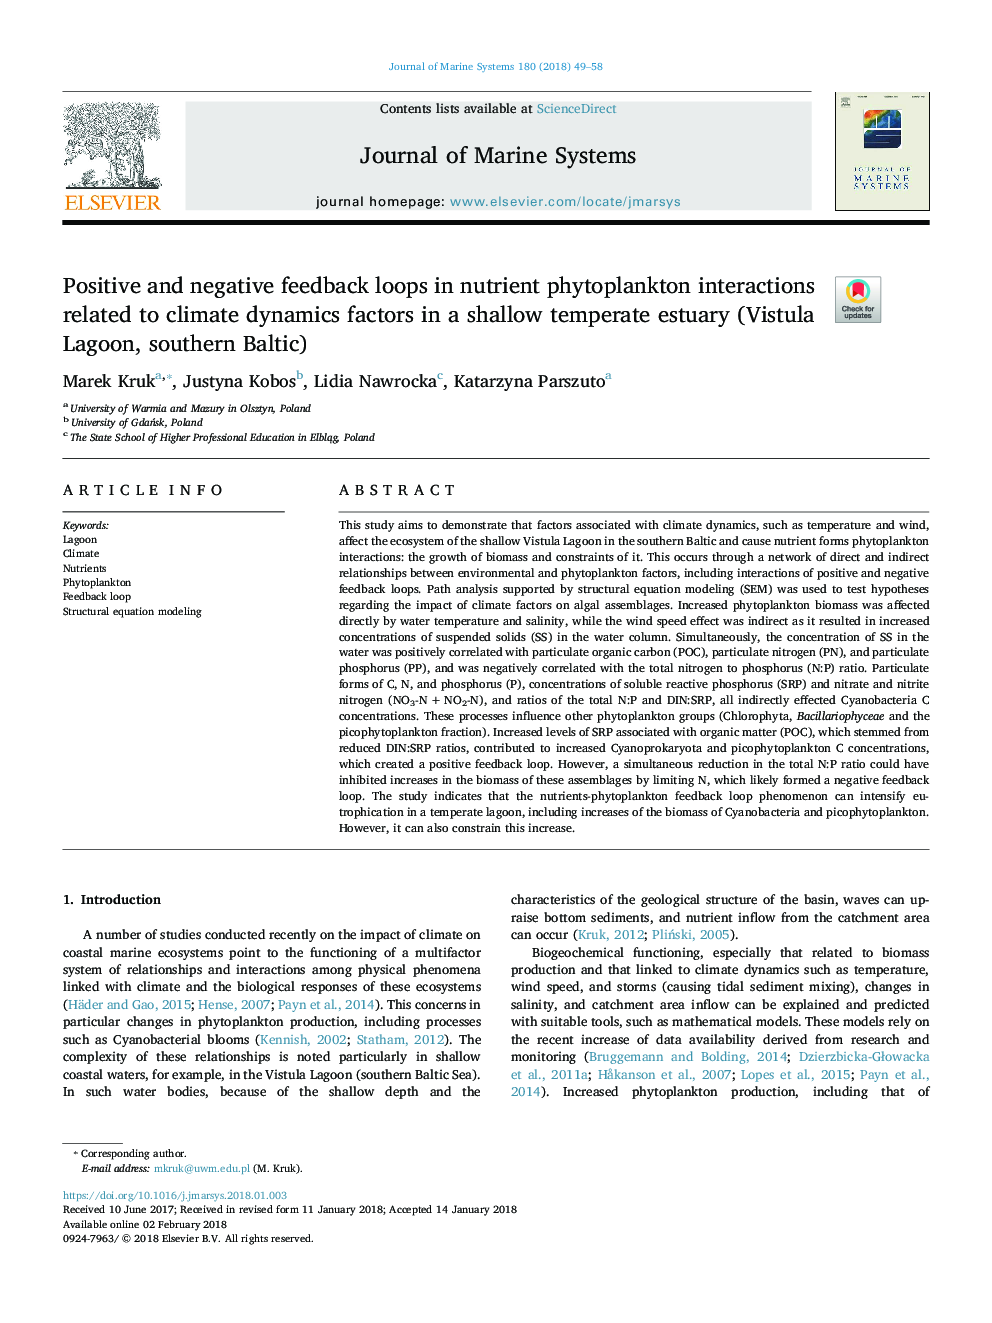 حلقه های بازخورد مثبت و منفی در تعاملات فیتوپلانکتون مواد مغذی مربوط به عوامل دینامیکی آب و هوایی در یک مرطوب کم عمق (ویستولا دریاچه، جنوب 